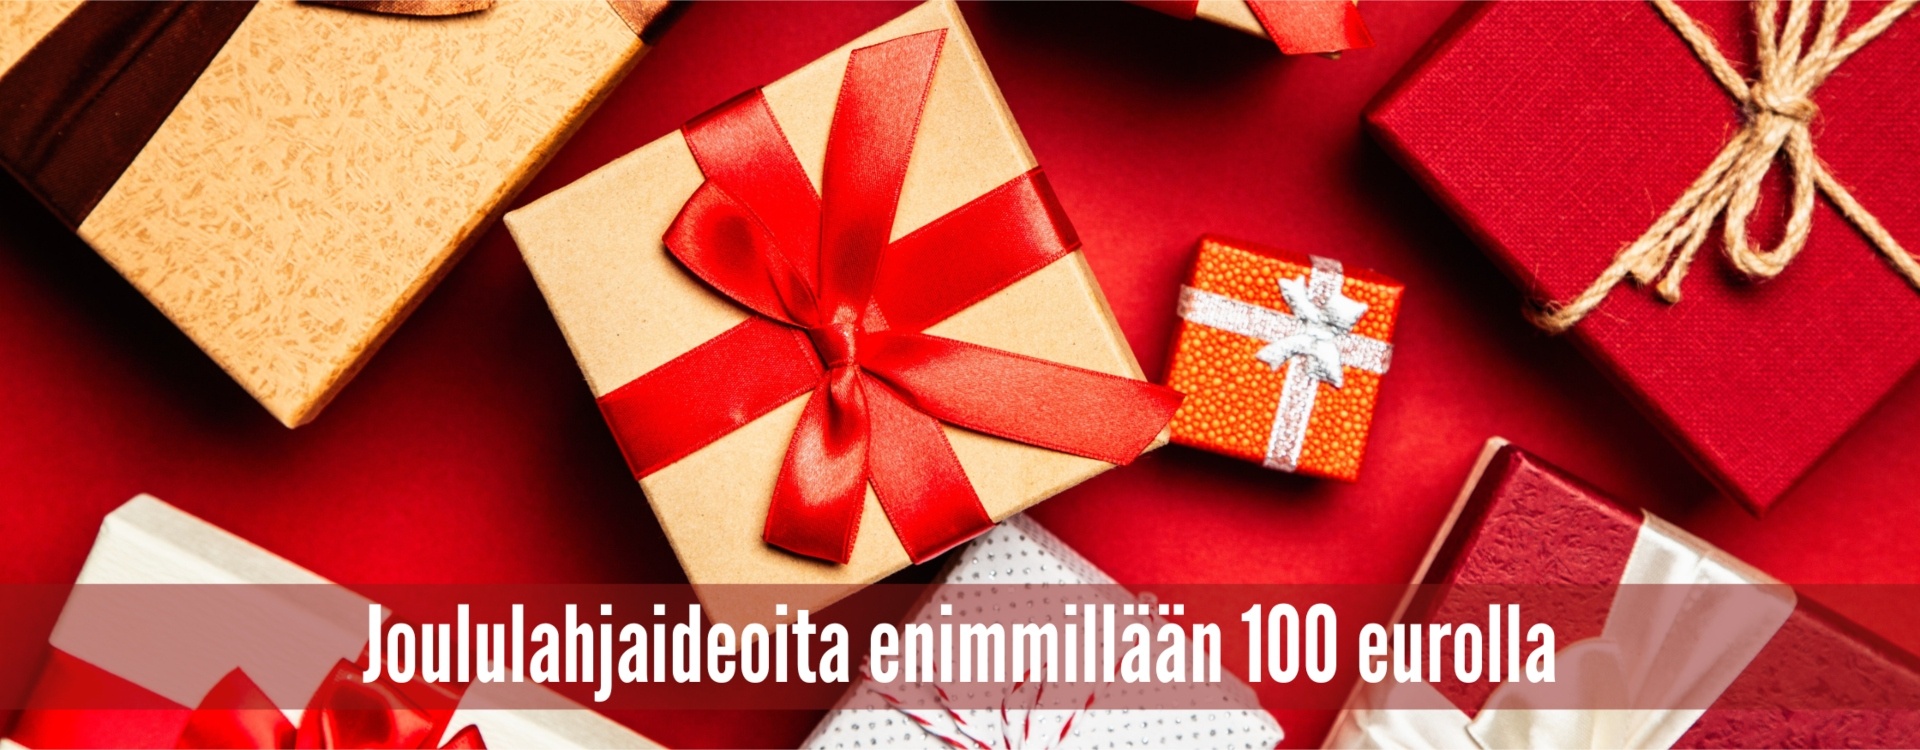 Joululahjaideoita enimmillään 100 eurolla